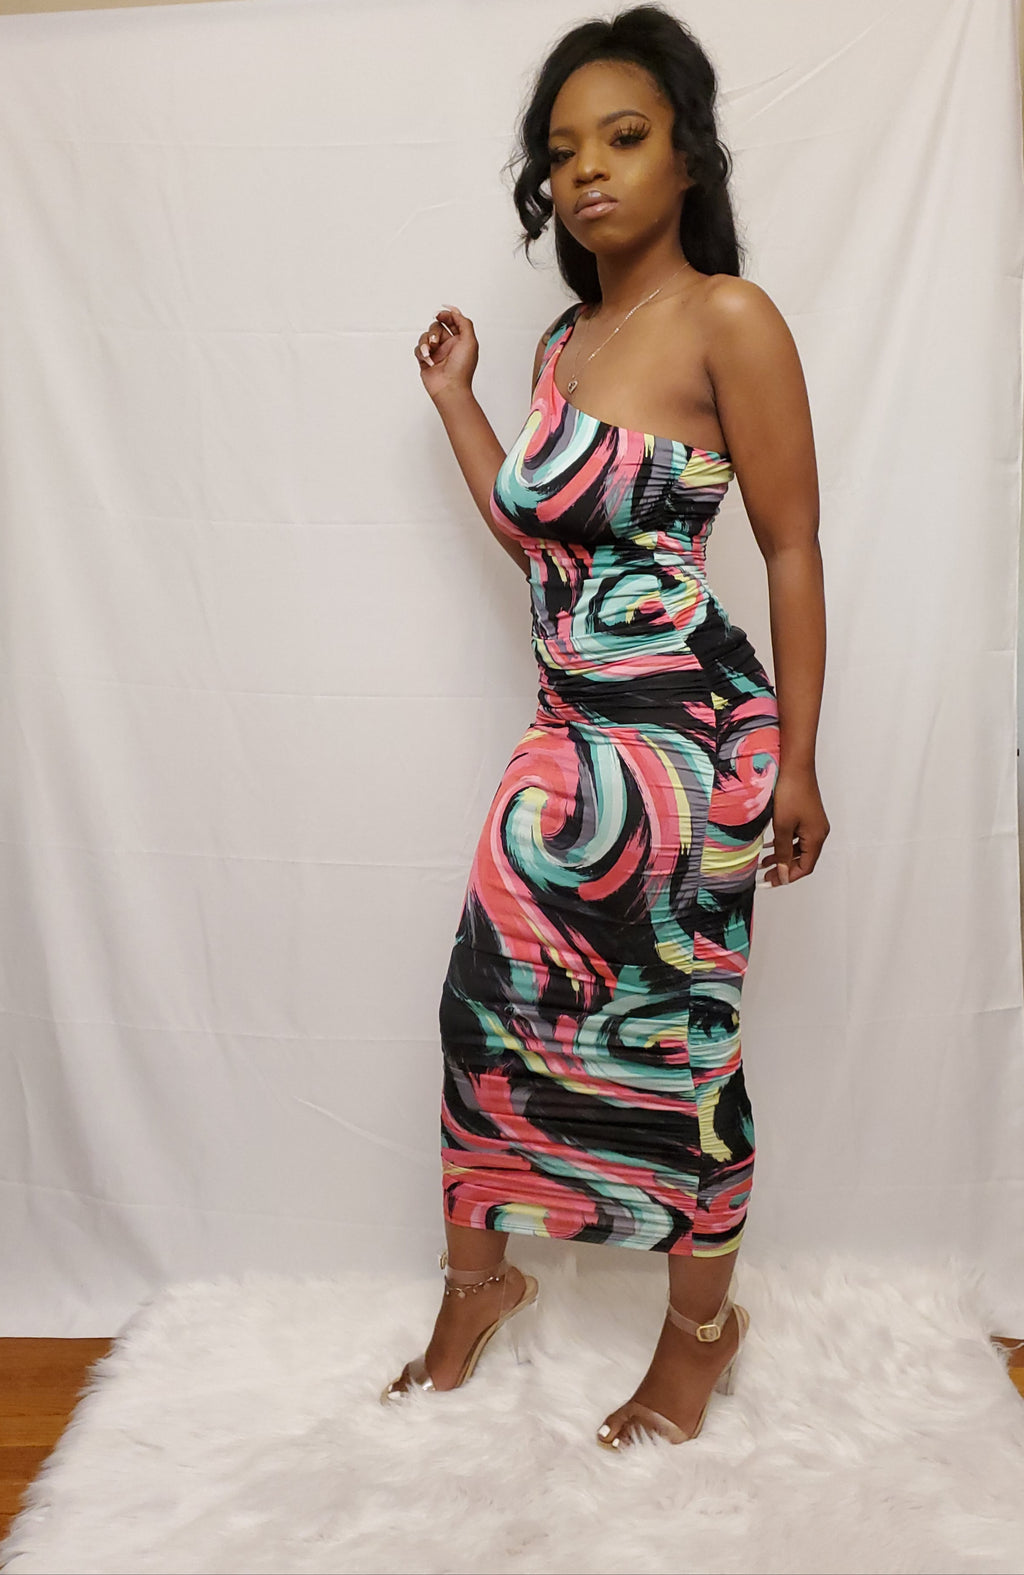 " Bahama Breeze " dress